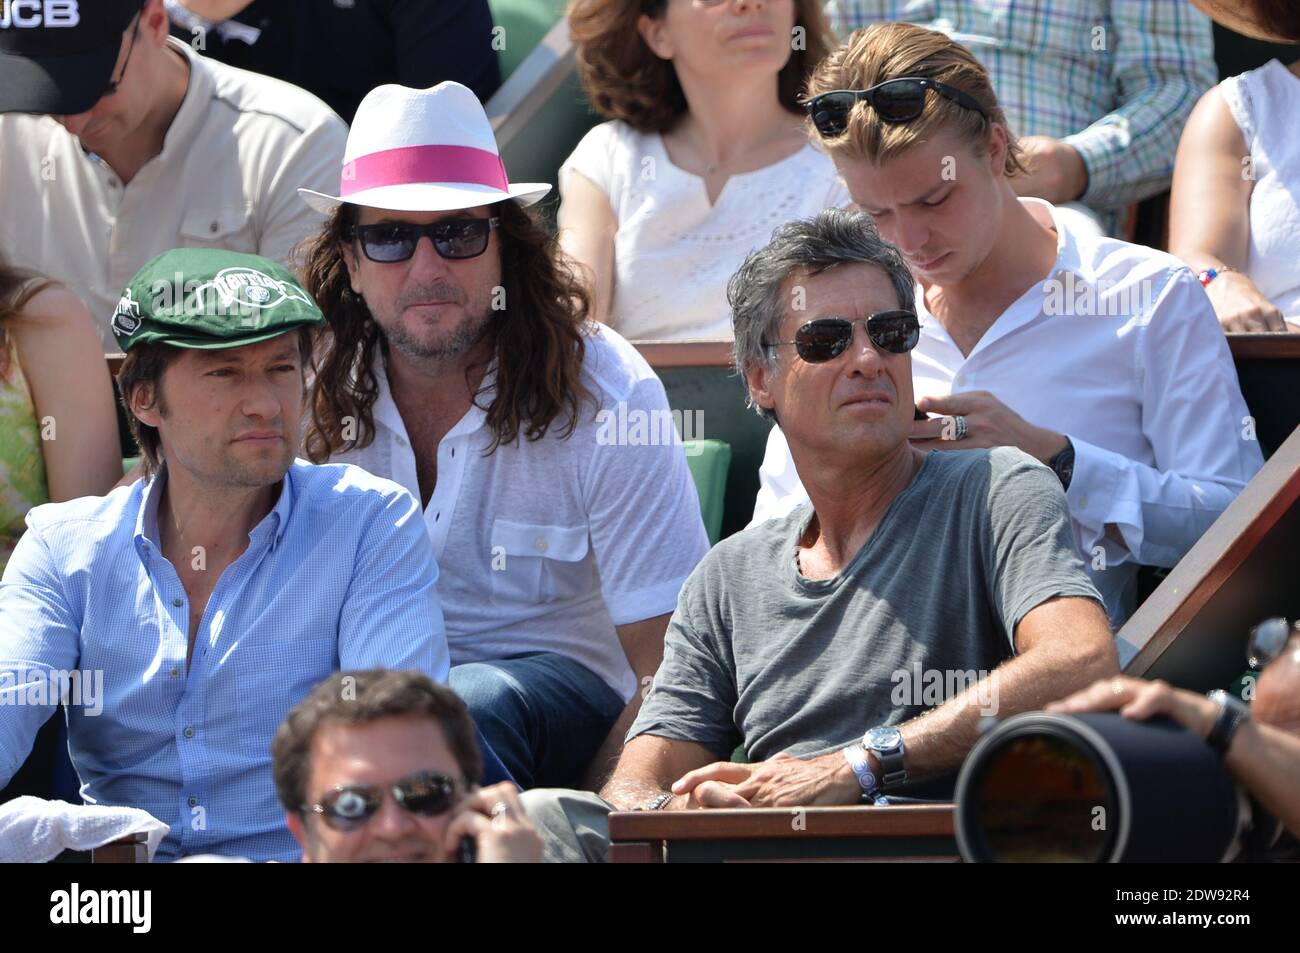 Marc Simoncini et Jacques Antoine Granjon regardant le dernier match  individuel des hommes de l'Open de tennis français à l'arène Roland Garros  à Paris, France, le 8 juin 2014. Photo de Nicolas